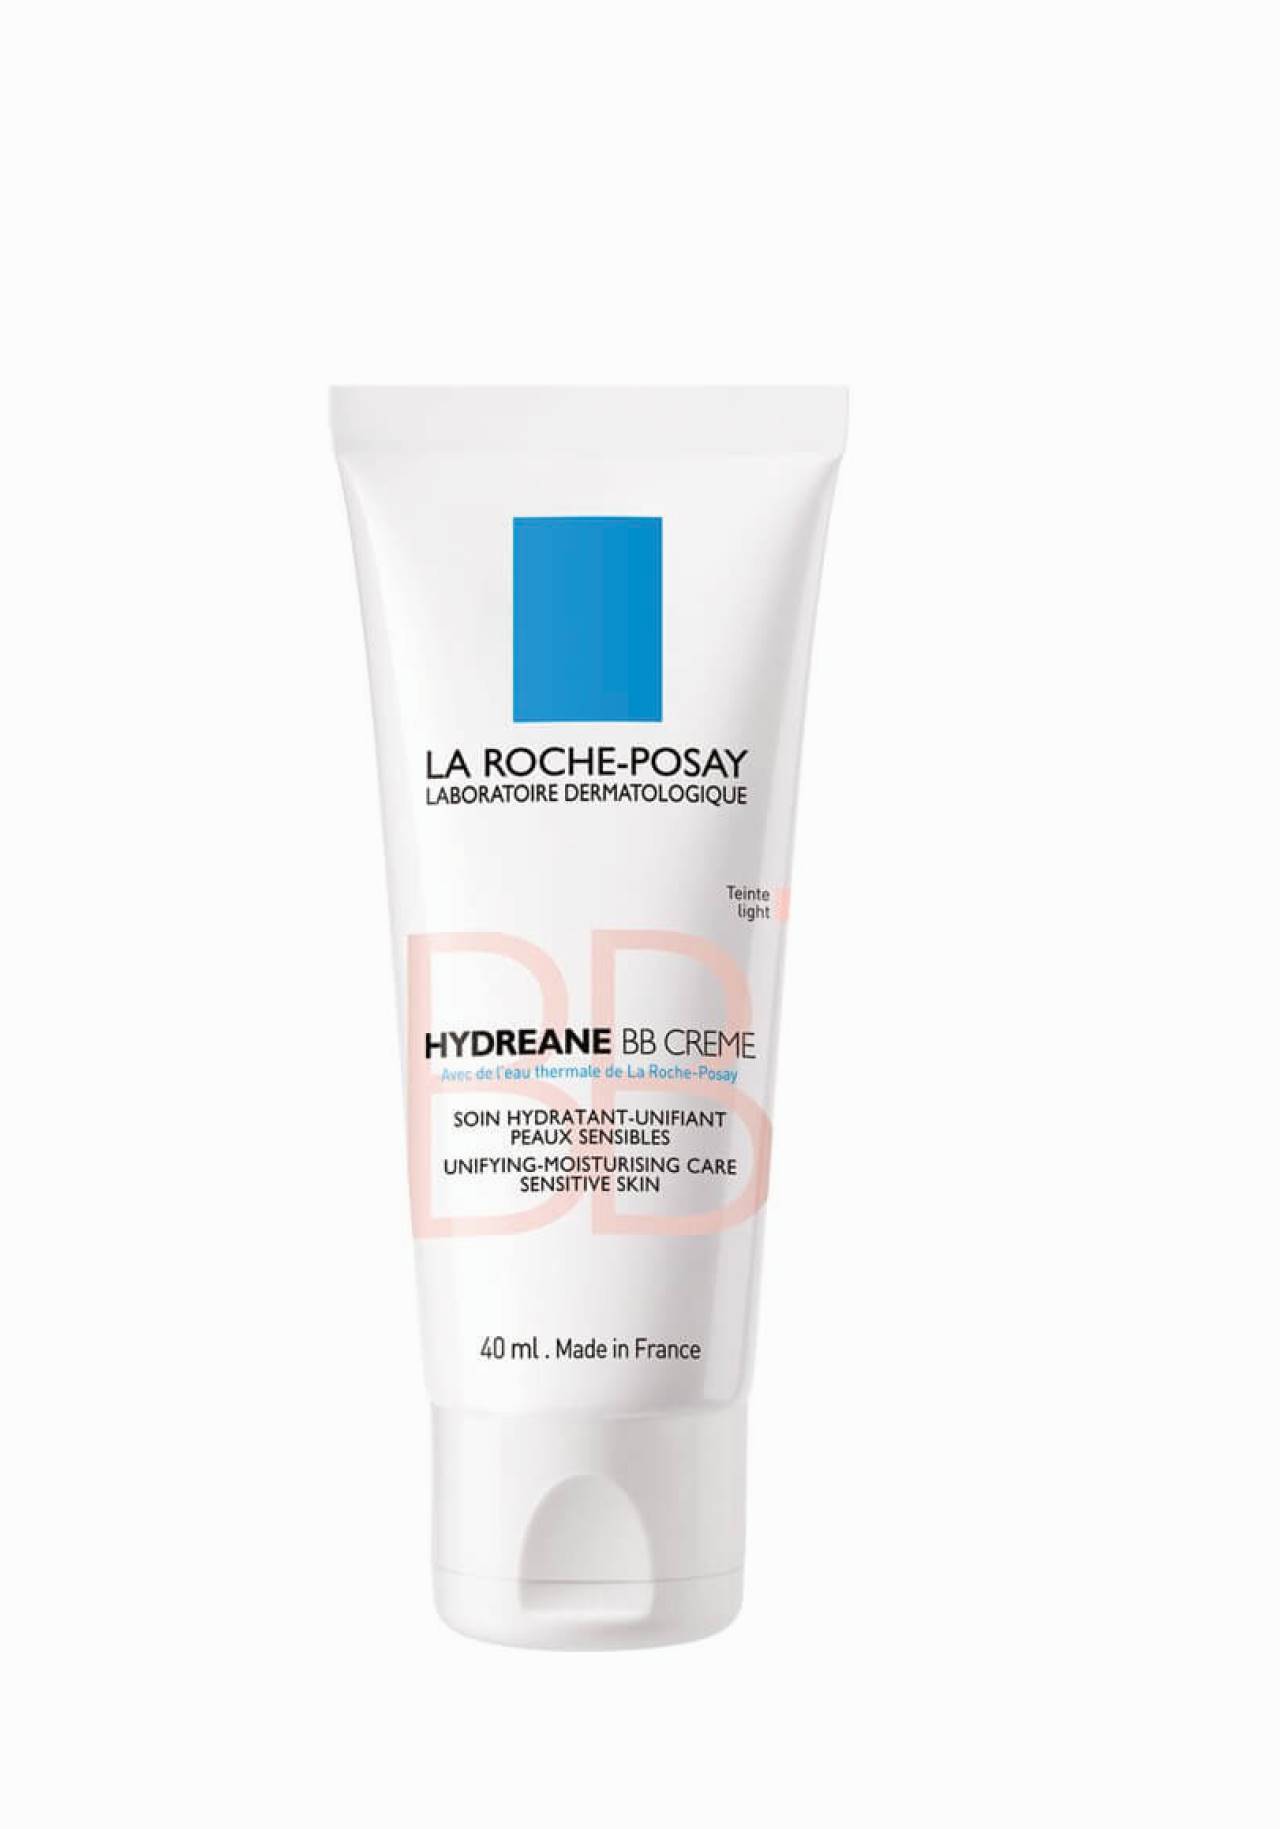  BB Creme Hyydreane para piel sensible de La Roche-Posay Las mejores cremas con color de farmacia por menos de 15€